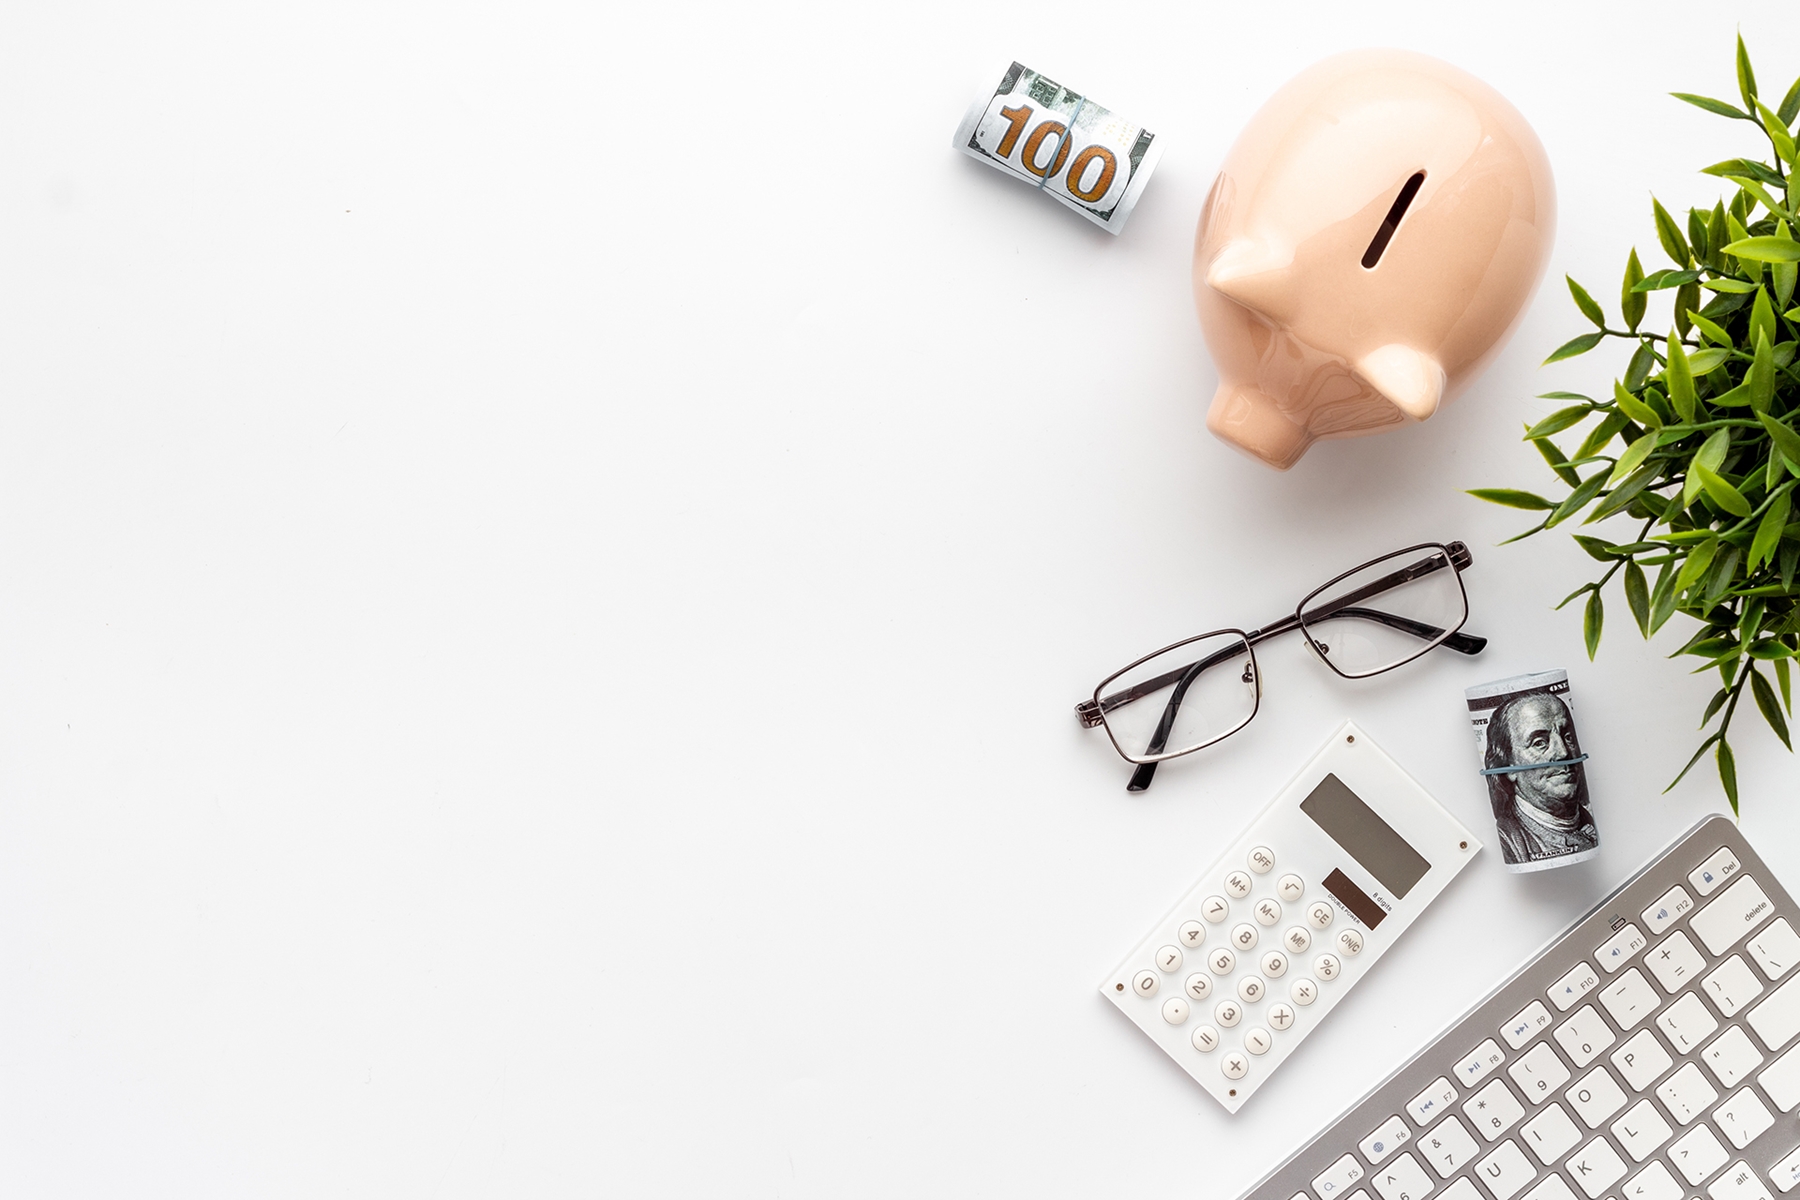 piggy bank, money and desk office supplies